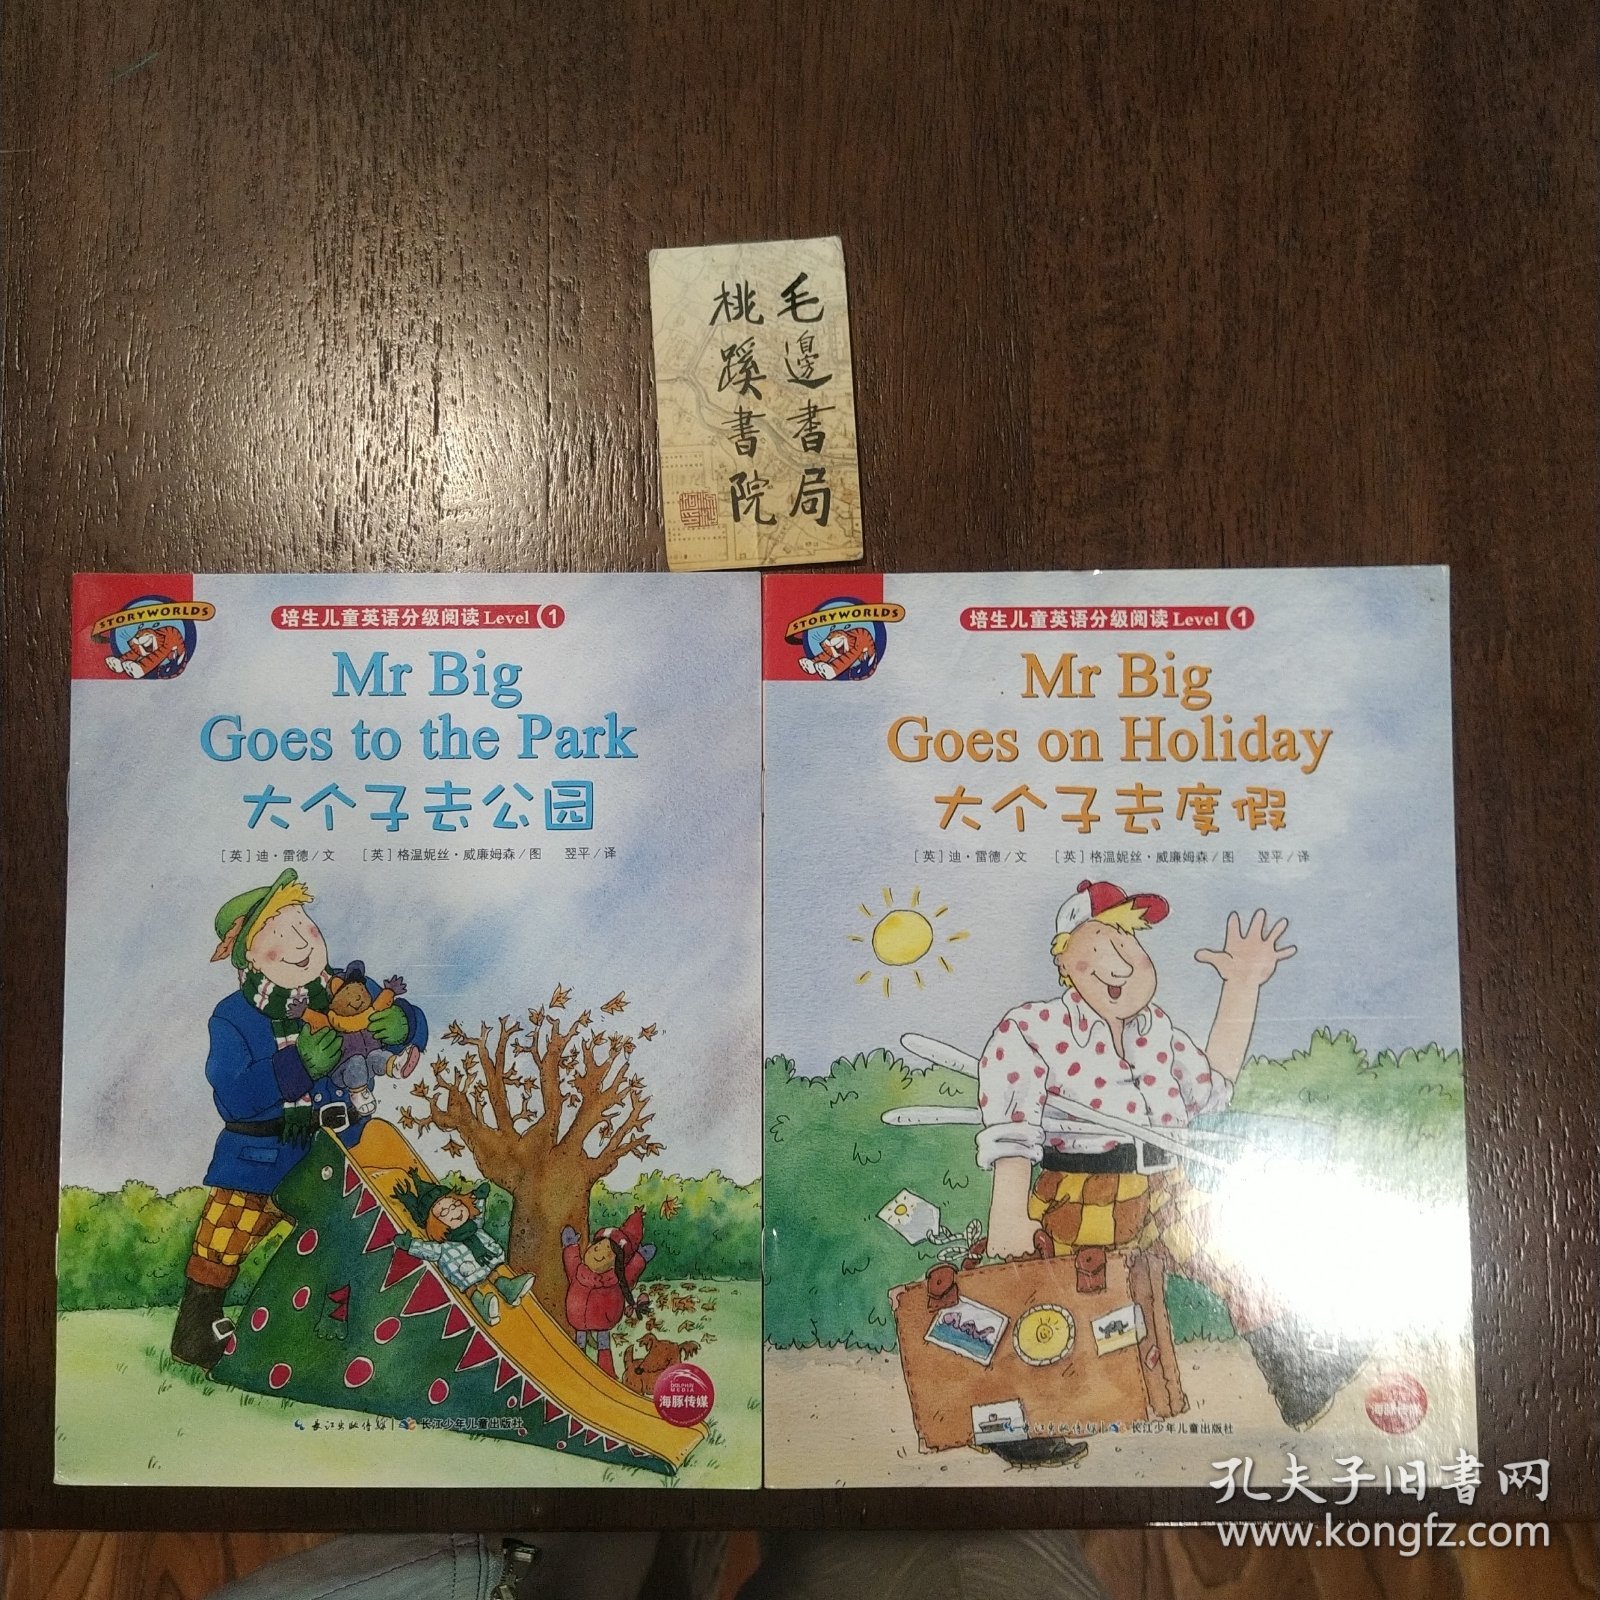 培生儿童英语分级阅读Leve1大个子去度假、大个子去公园2册合售